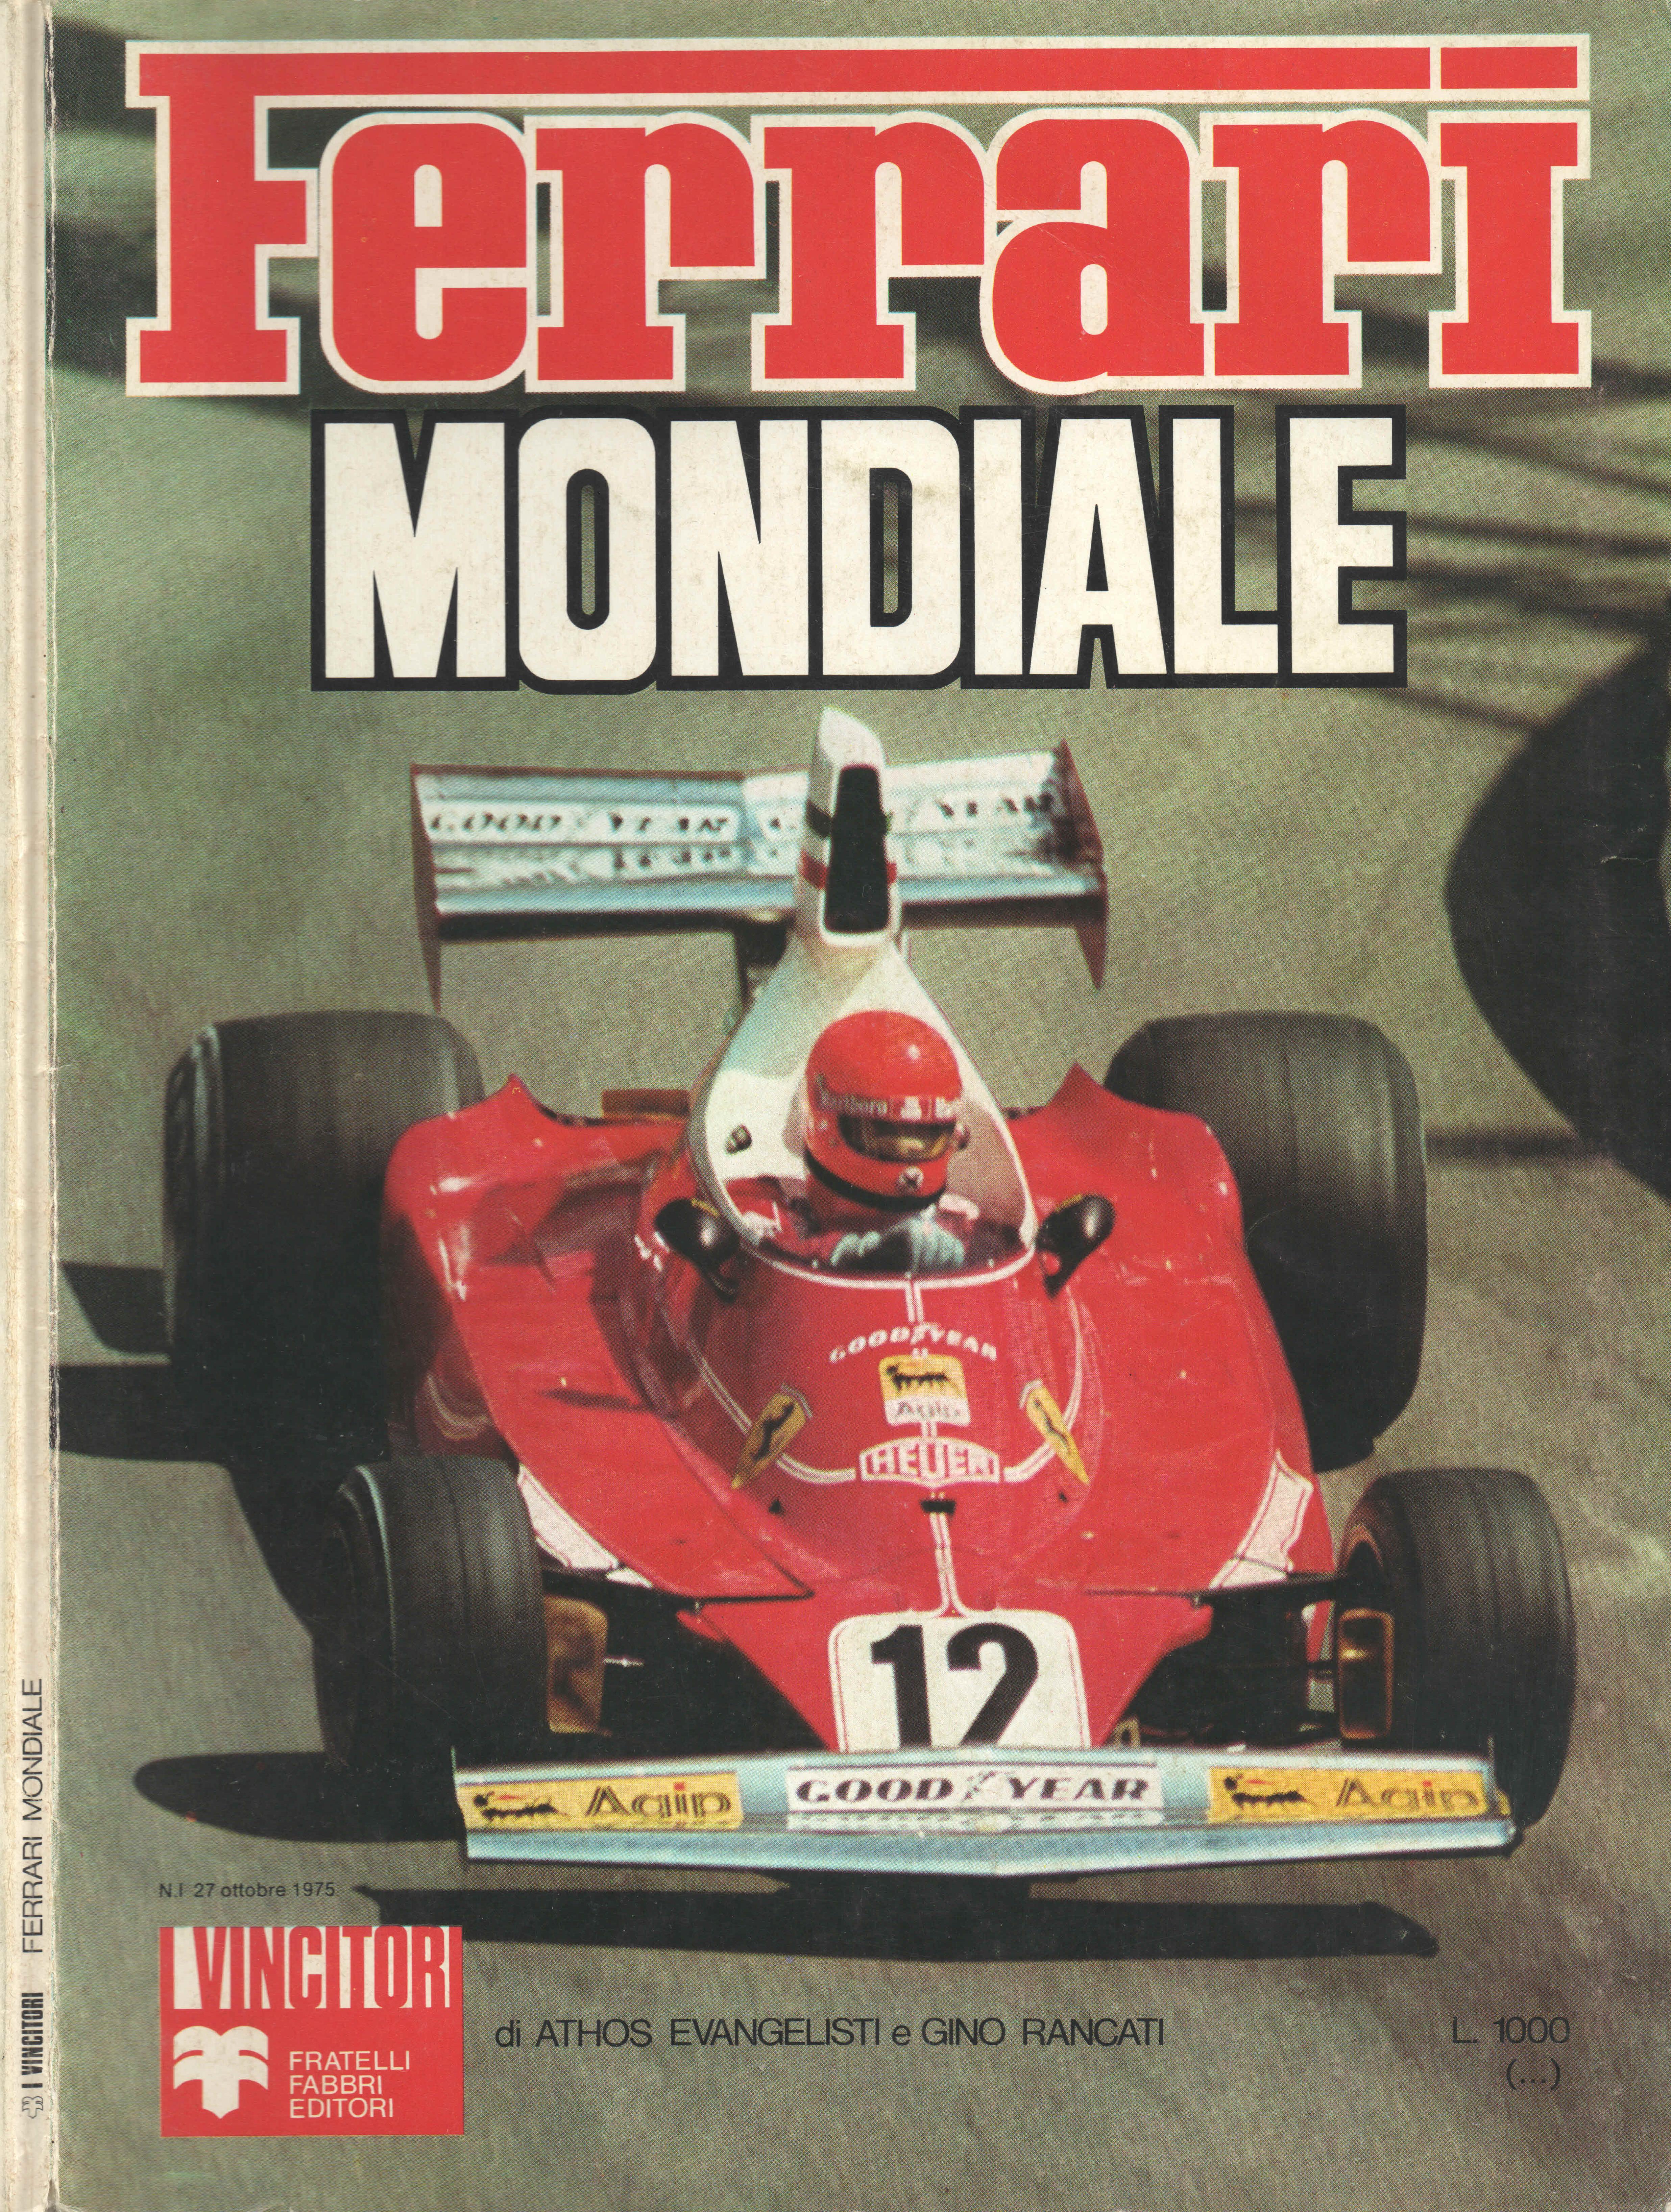 Книга Ferrari Mondiale 1975. Автор: Athos Evangelisti, Gino Rancati.